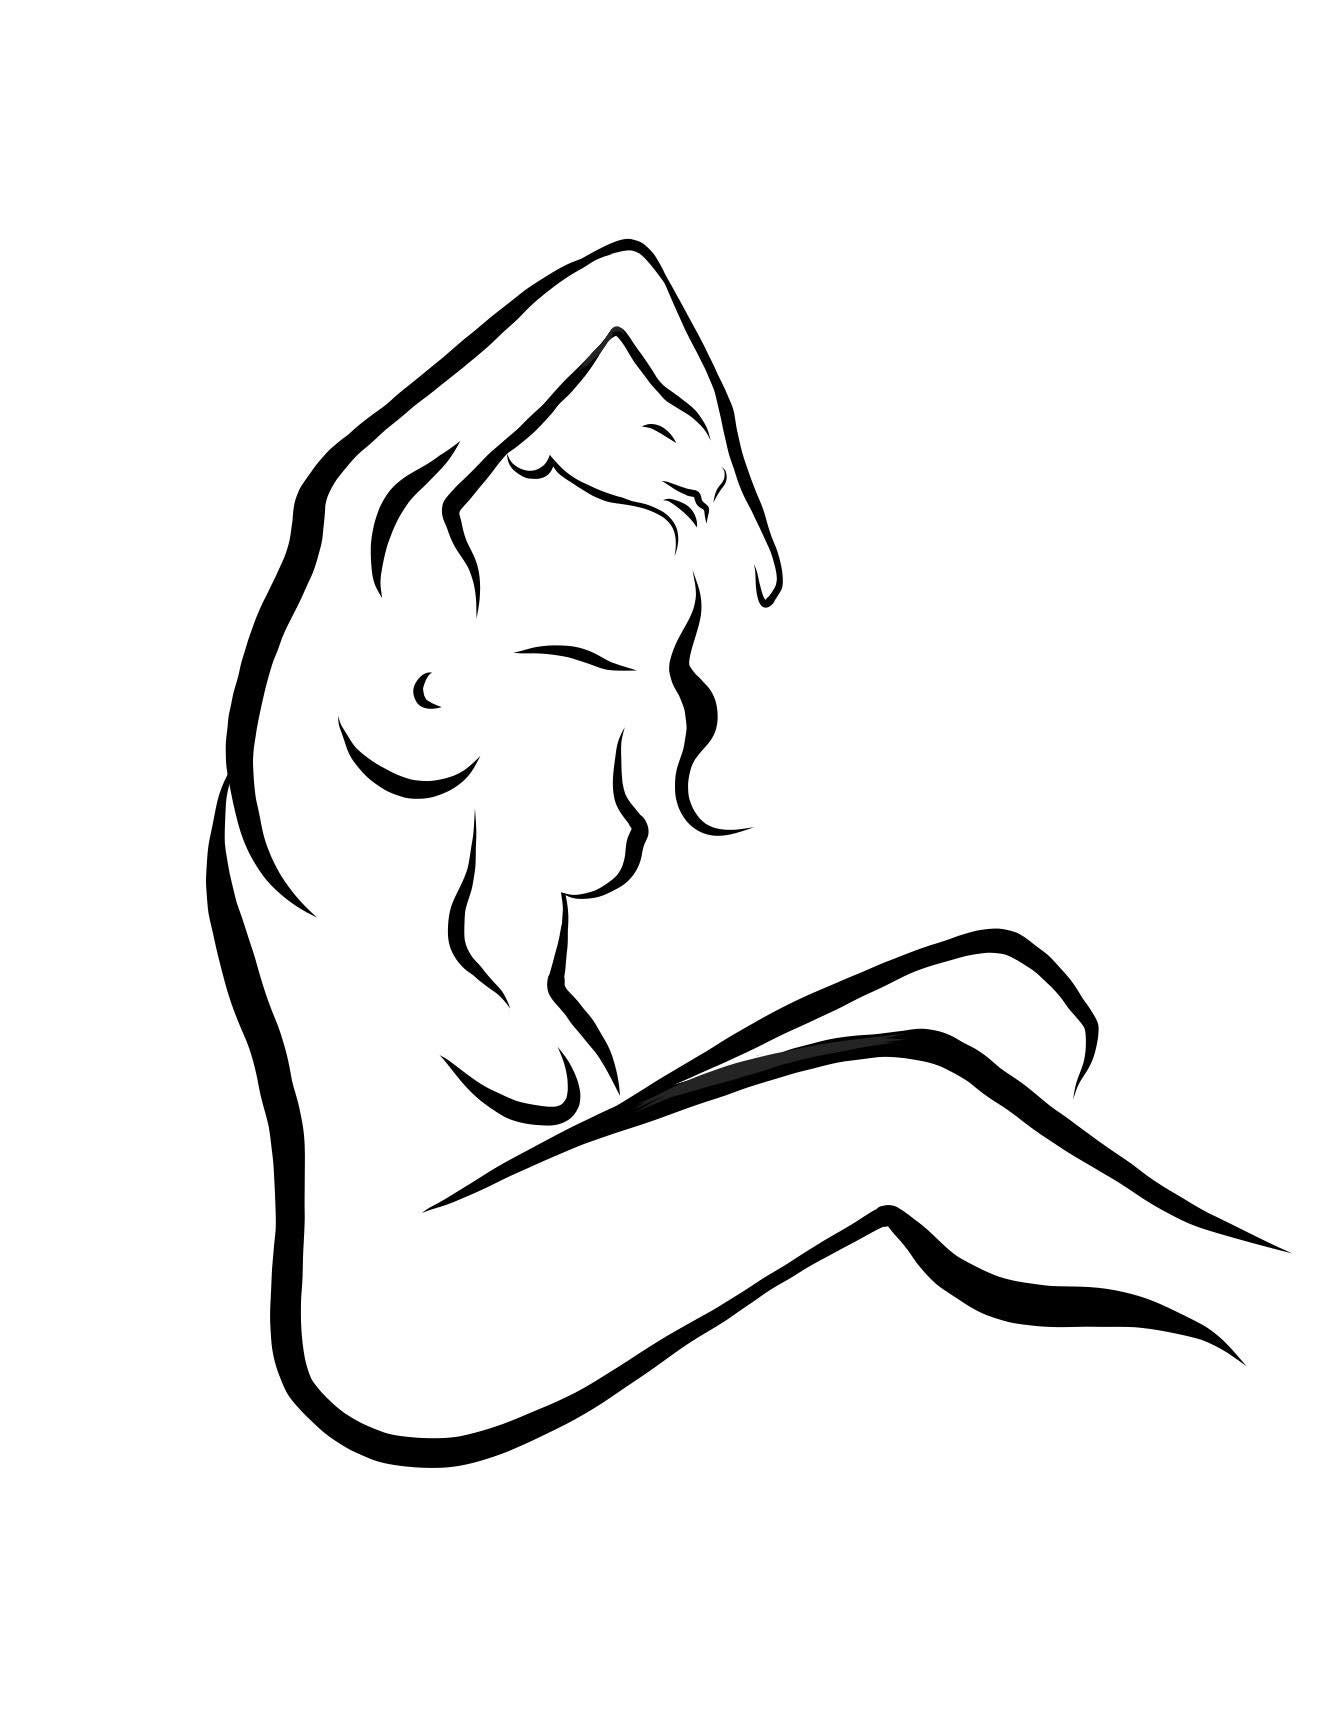 Michael Binkley Nude Print – Haiku #18, 1/50 - Digitale Vektorzeichnung Sitzender weiblicher Akt Frau Figur Arm hoch